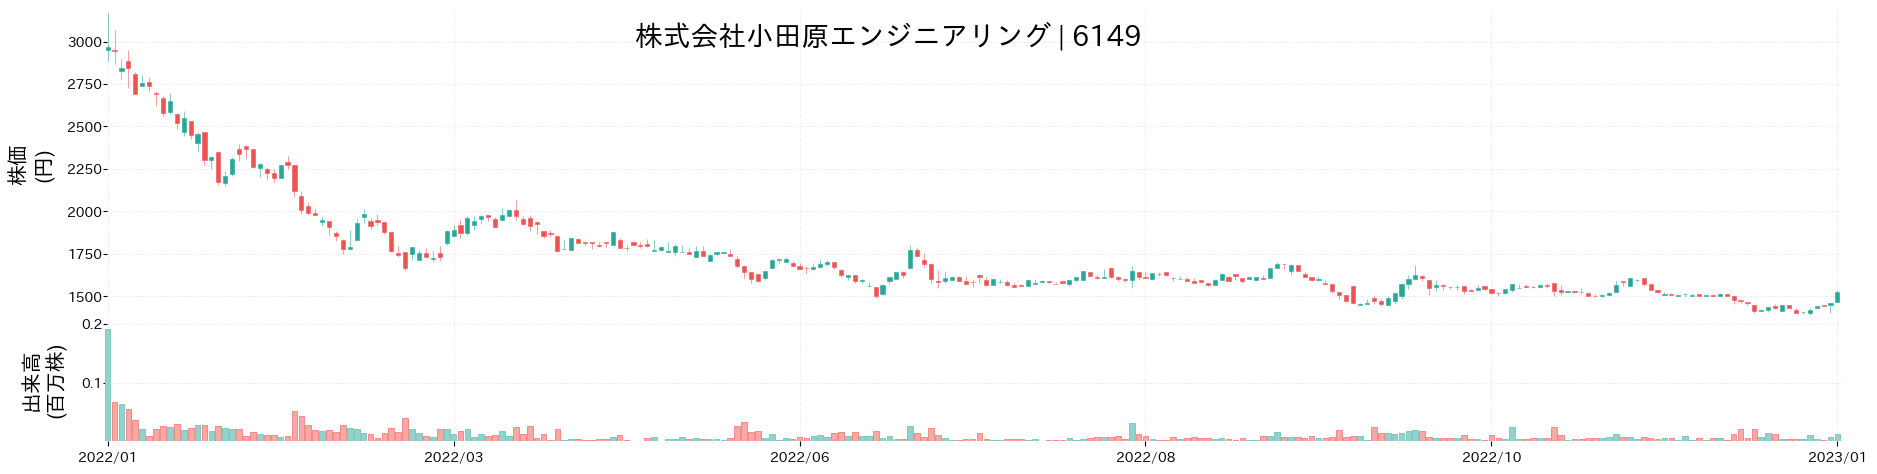 小田原エンジニアリングの株価推移(2022)